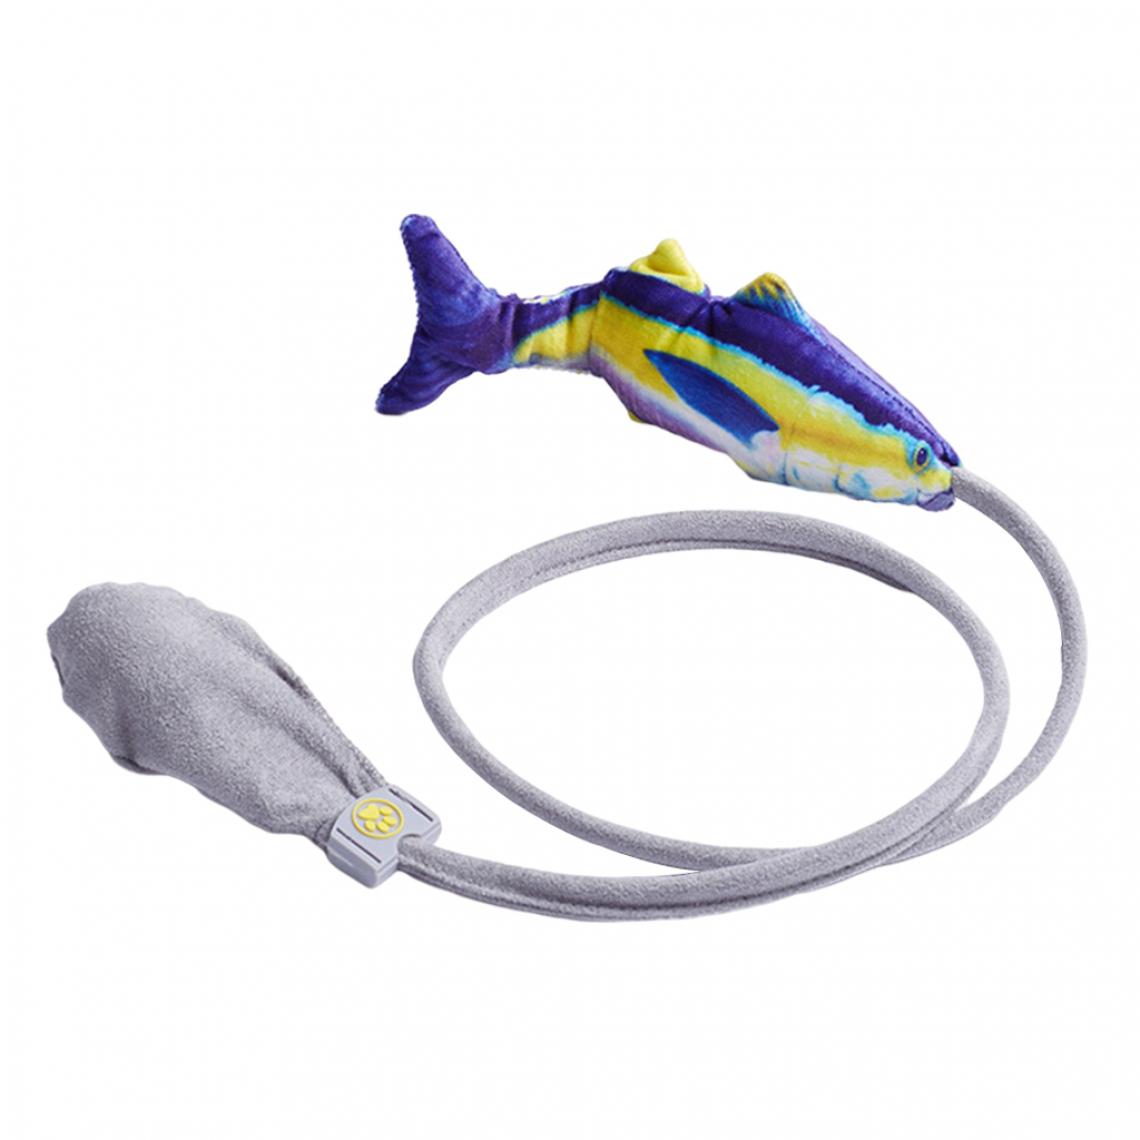 marque generique - Flopping Fish Dancing Toy Cataire Jouet Interactif Jouet Pour Chat Crucian Carp - Jouet pour chien